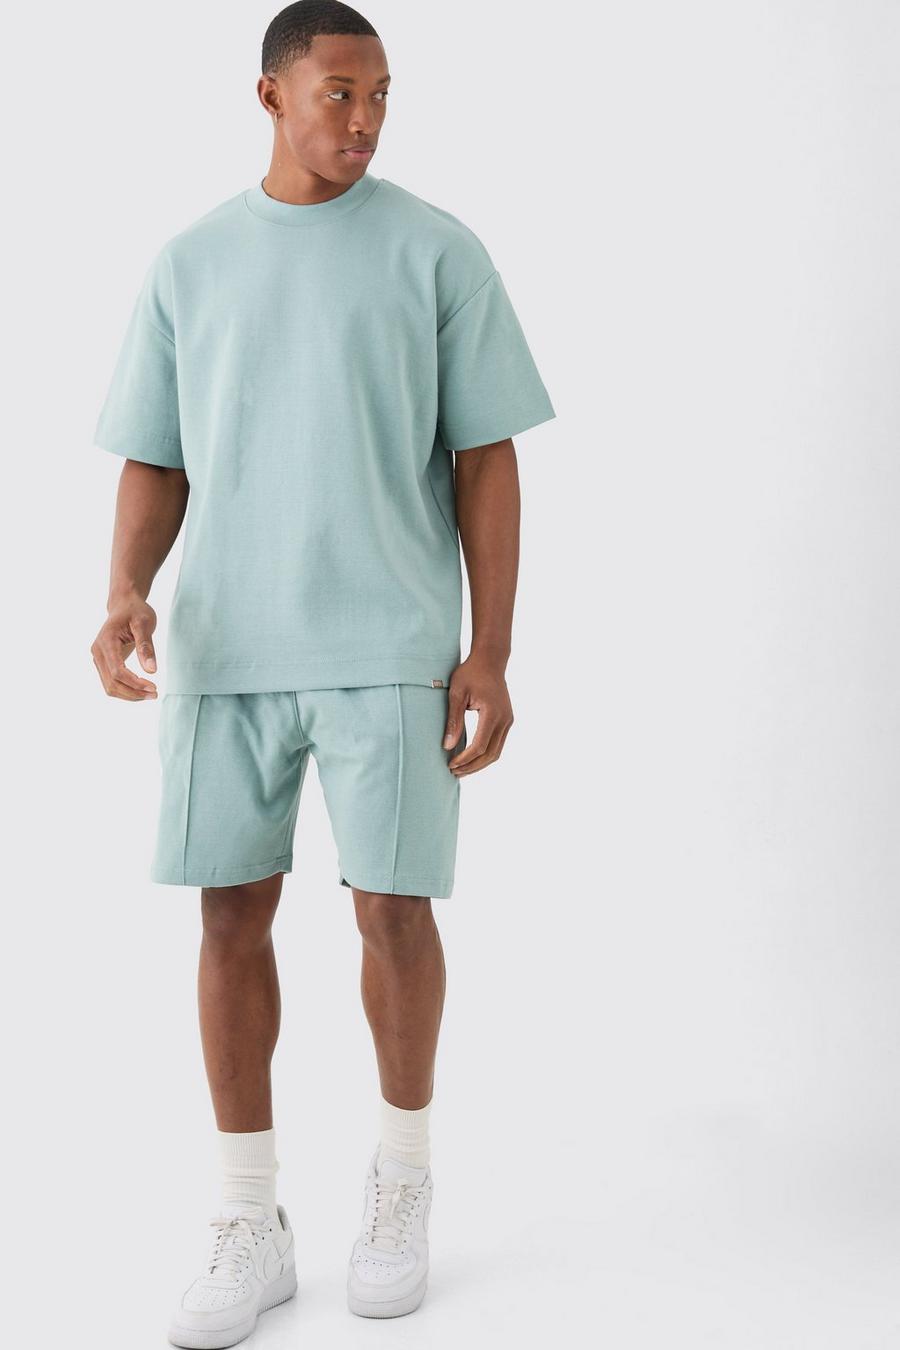 Dusty blue Oversized Interlock T-Shirt En Shorts Set